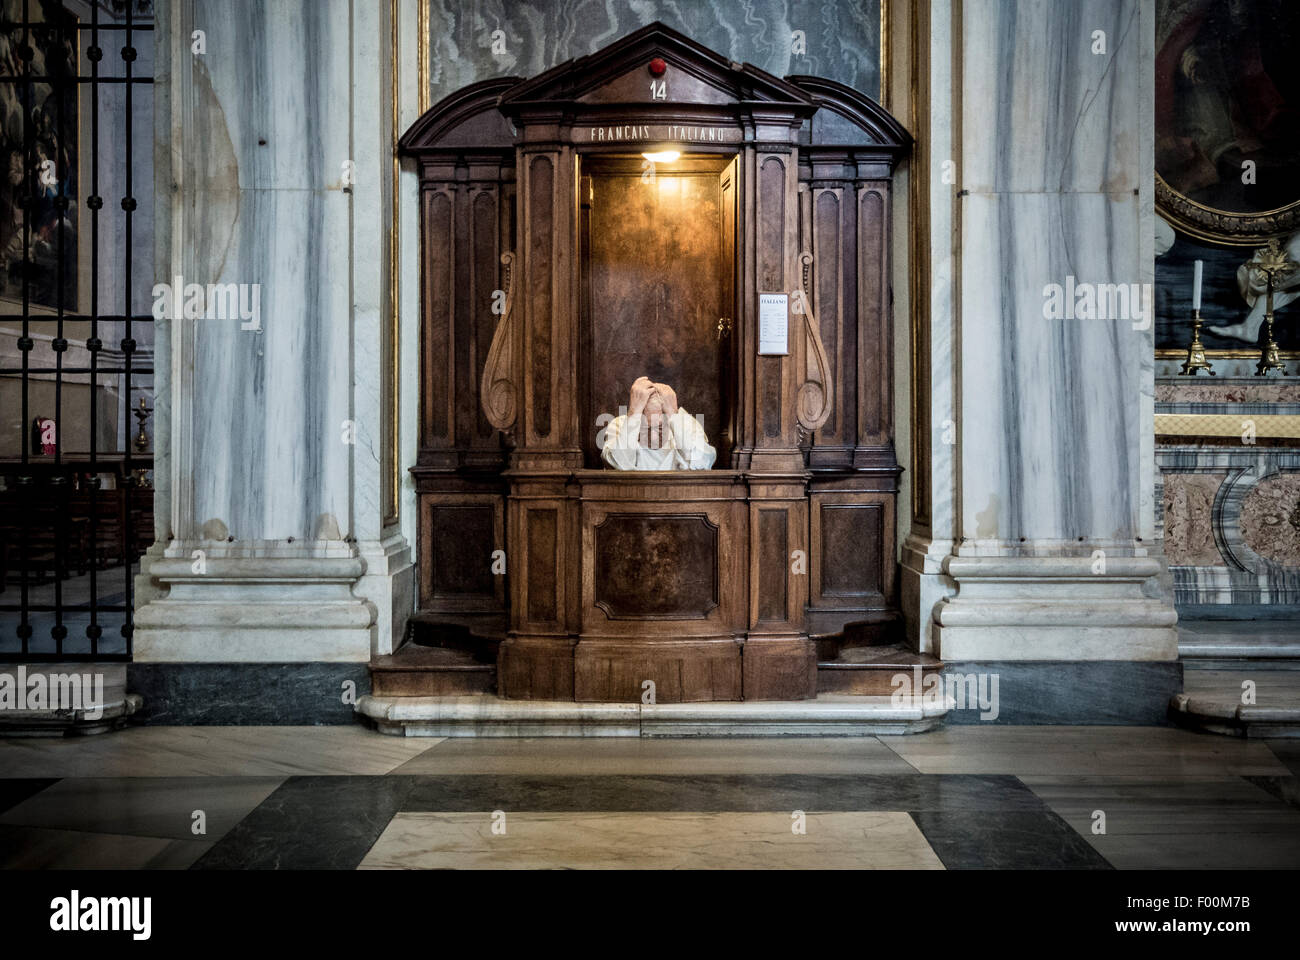 Priest in confession booth in The Basilica di Santa Maria Maggiore, Rome, Italy. Stock Photo